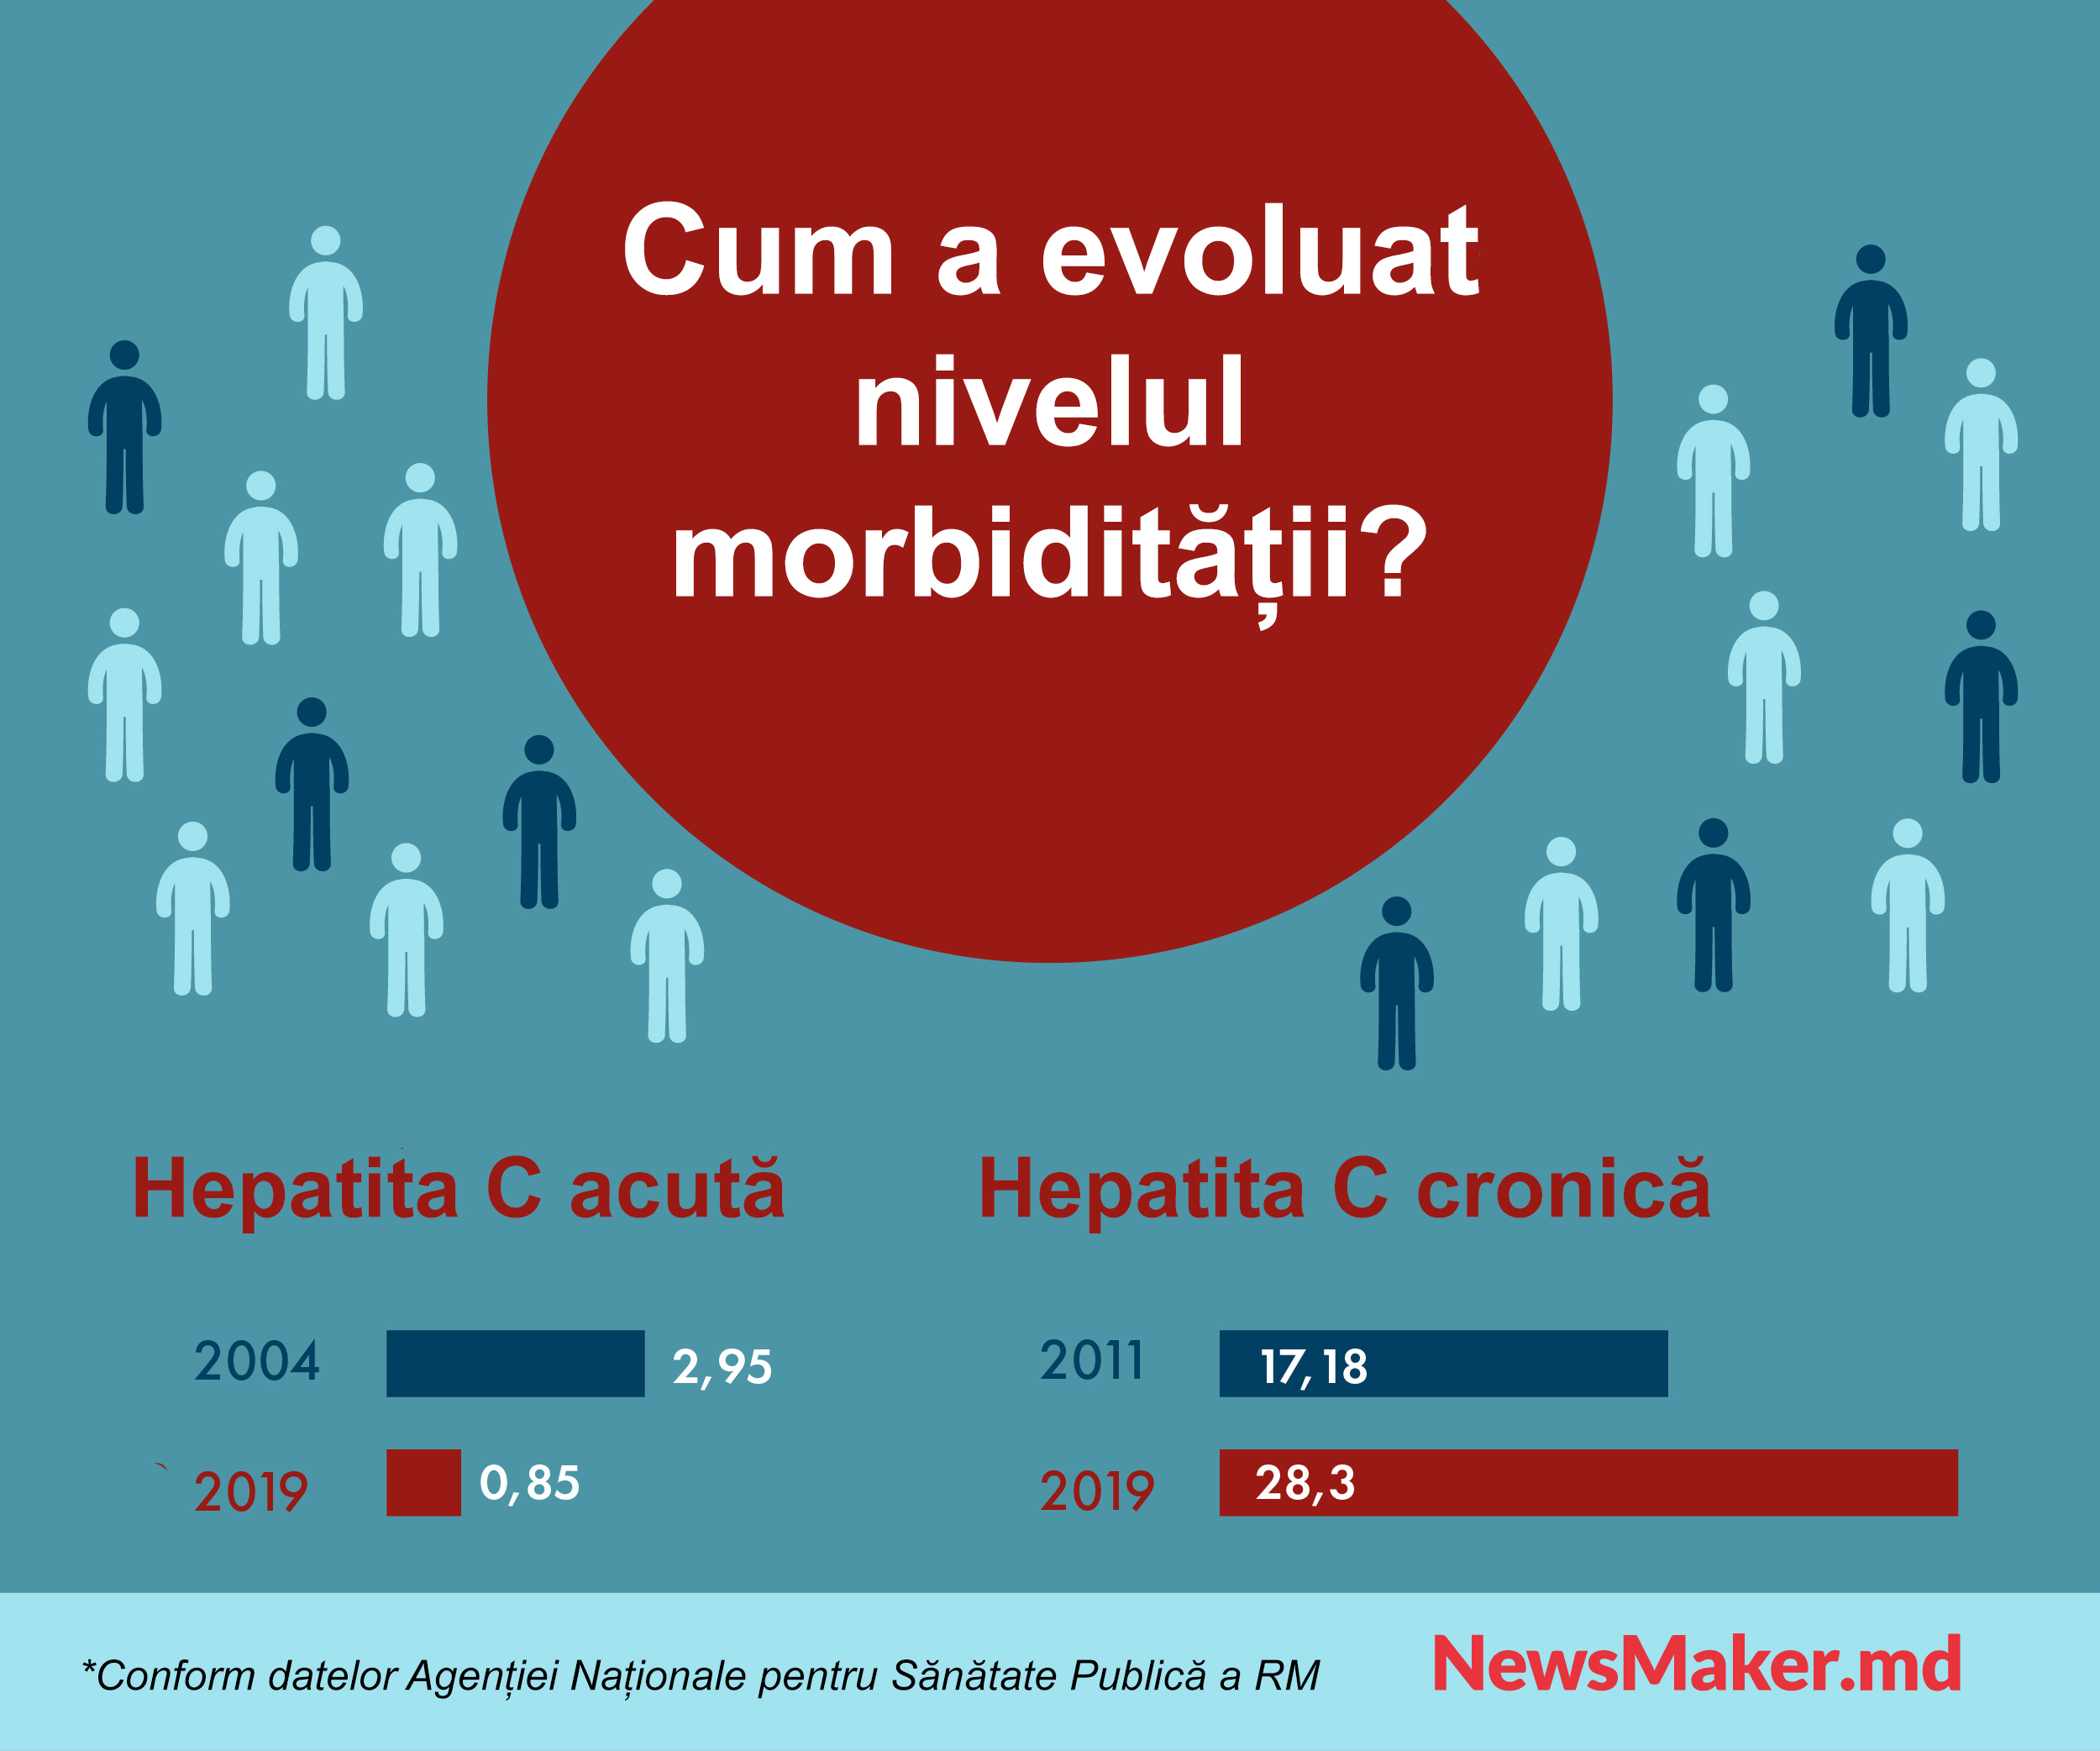 Incidența prin hepatita C acută crește în Moldova. Ce ne lipsește pentru a învinge virusul?